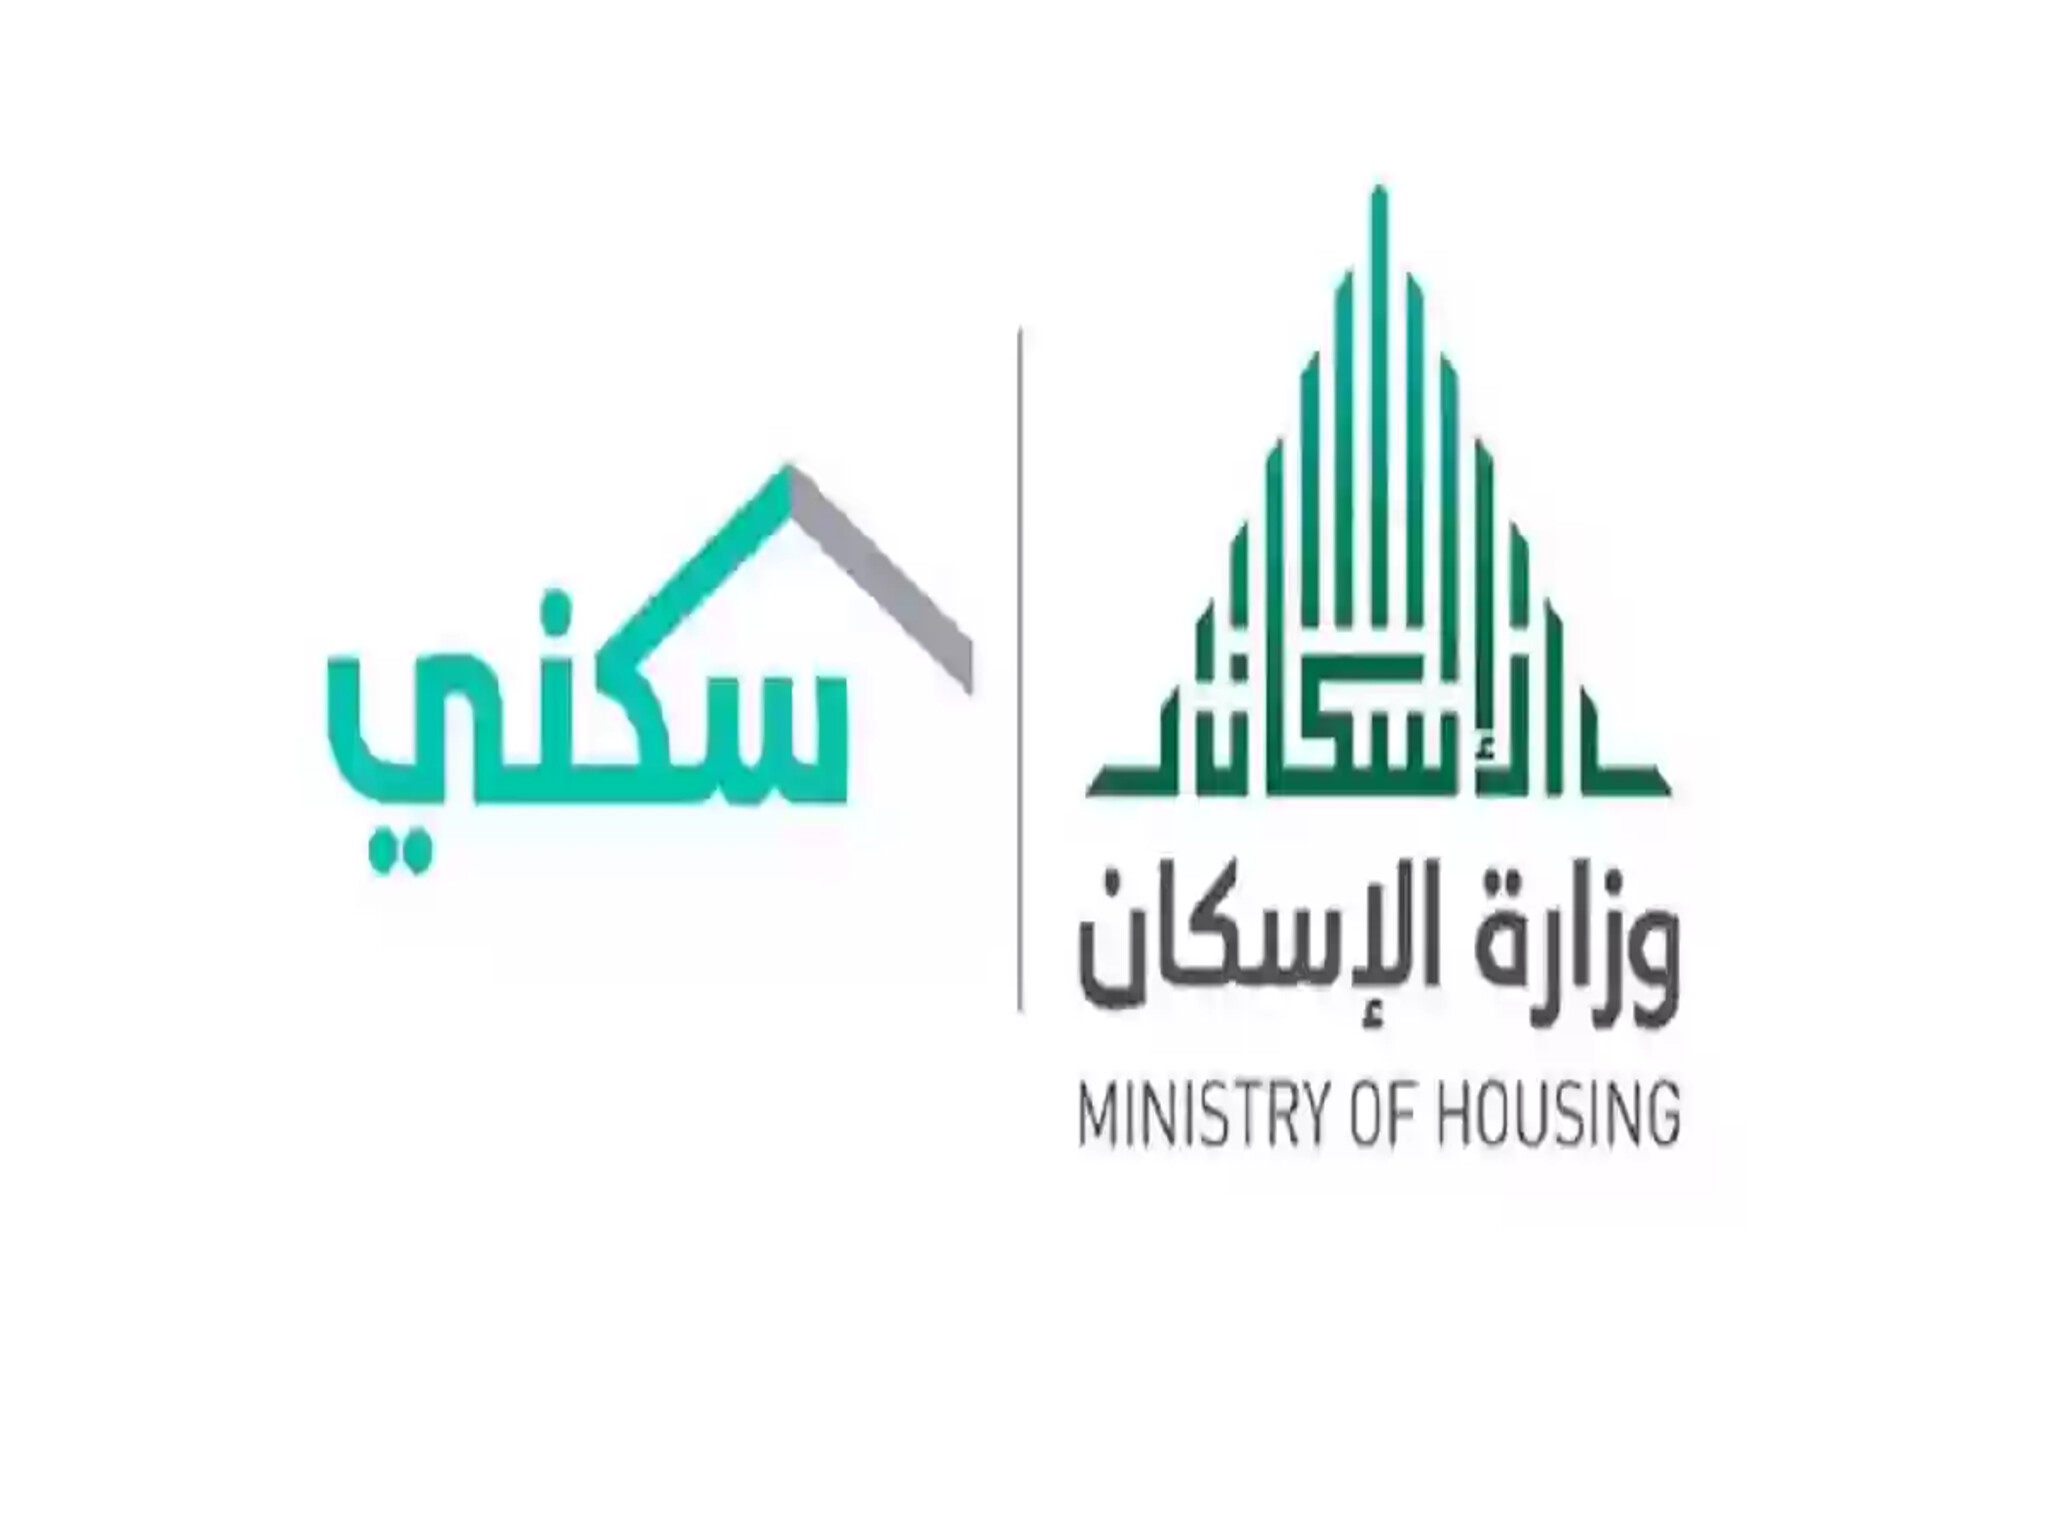 وزارة الإسكان السعودية توضح الحد المانع للدعم سكني 1445هـ وأهم شروط التسجيل 